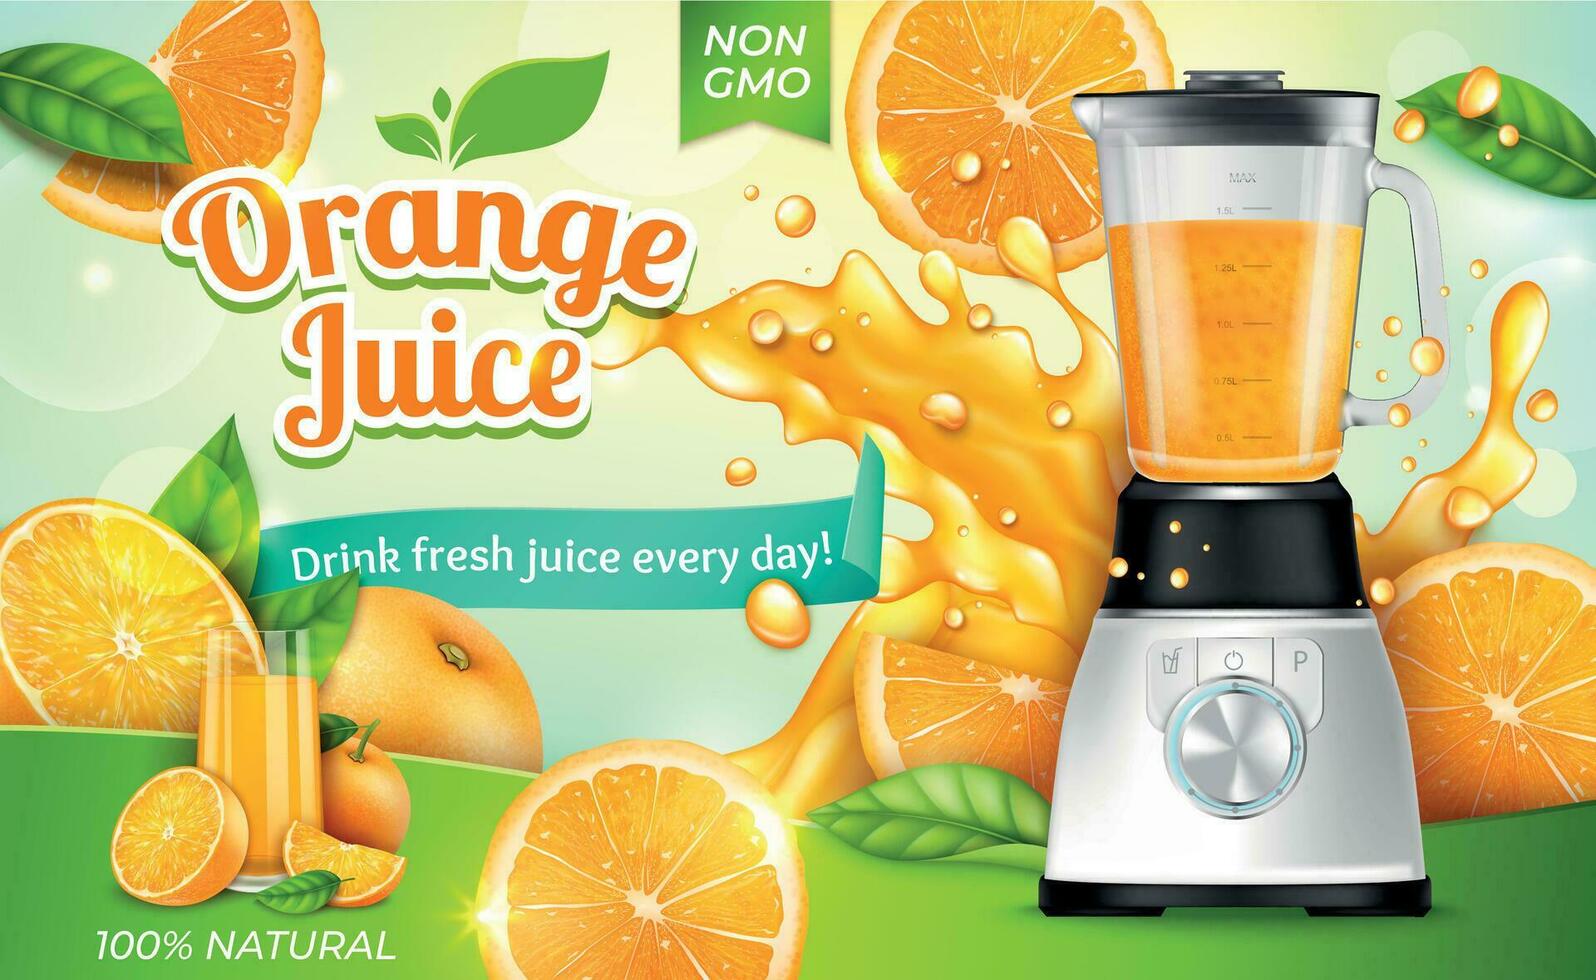 realista detallado 3d naranja jugo con eléctrico exprimidor anuncios bandera concepto póster tarjeta. vector